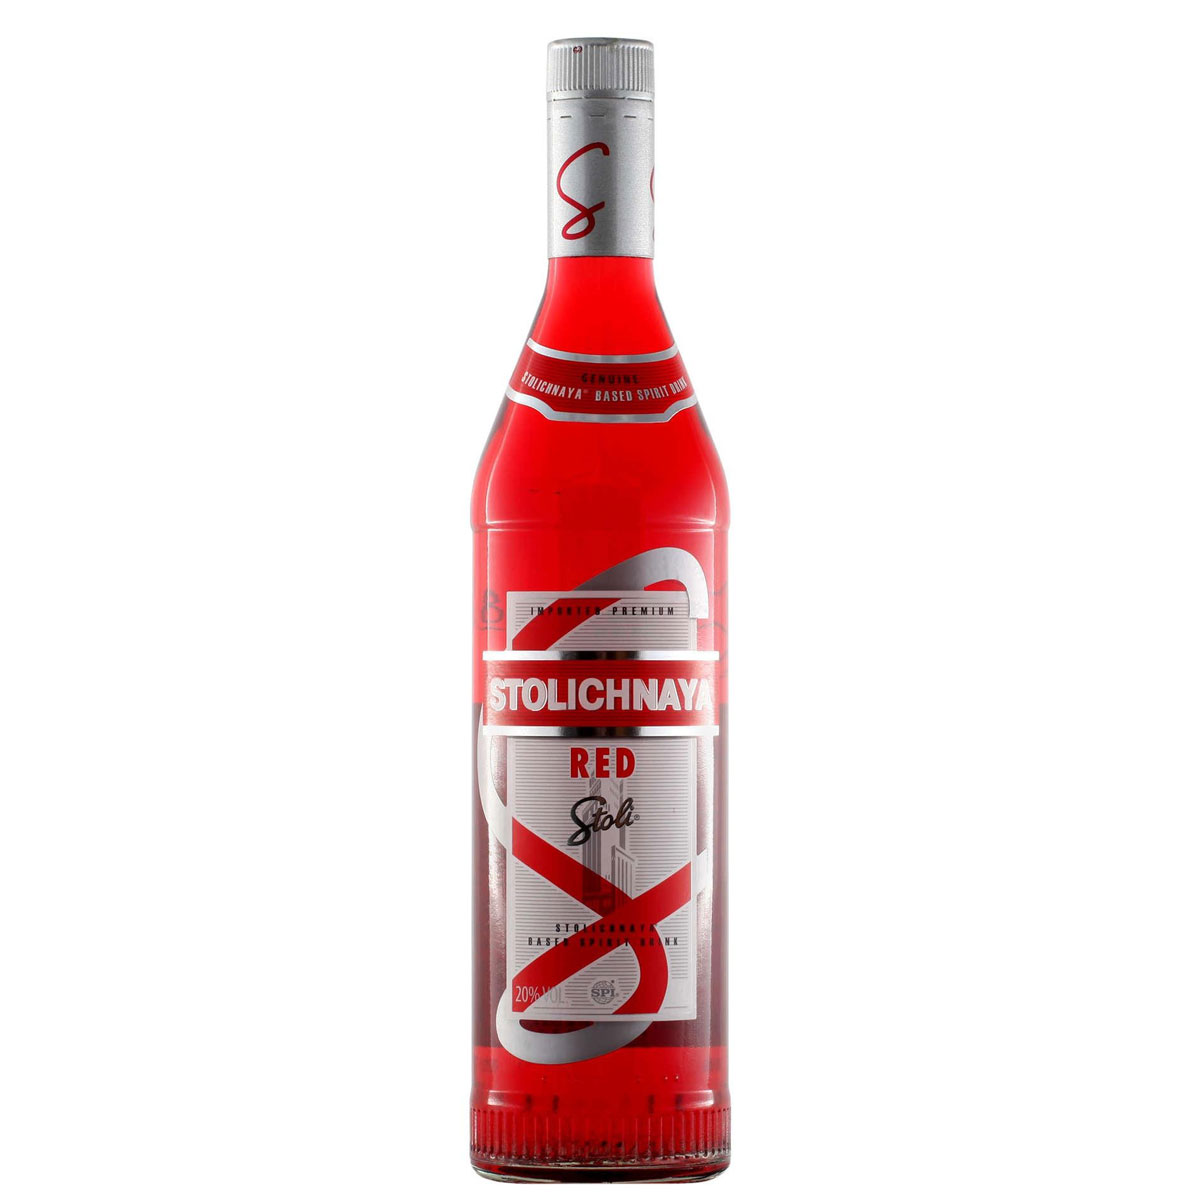 a bottle of stolichnaya red vodka